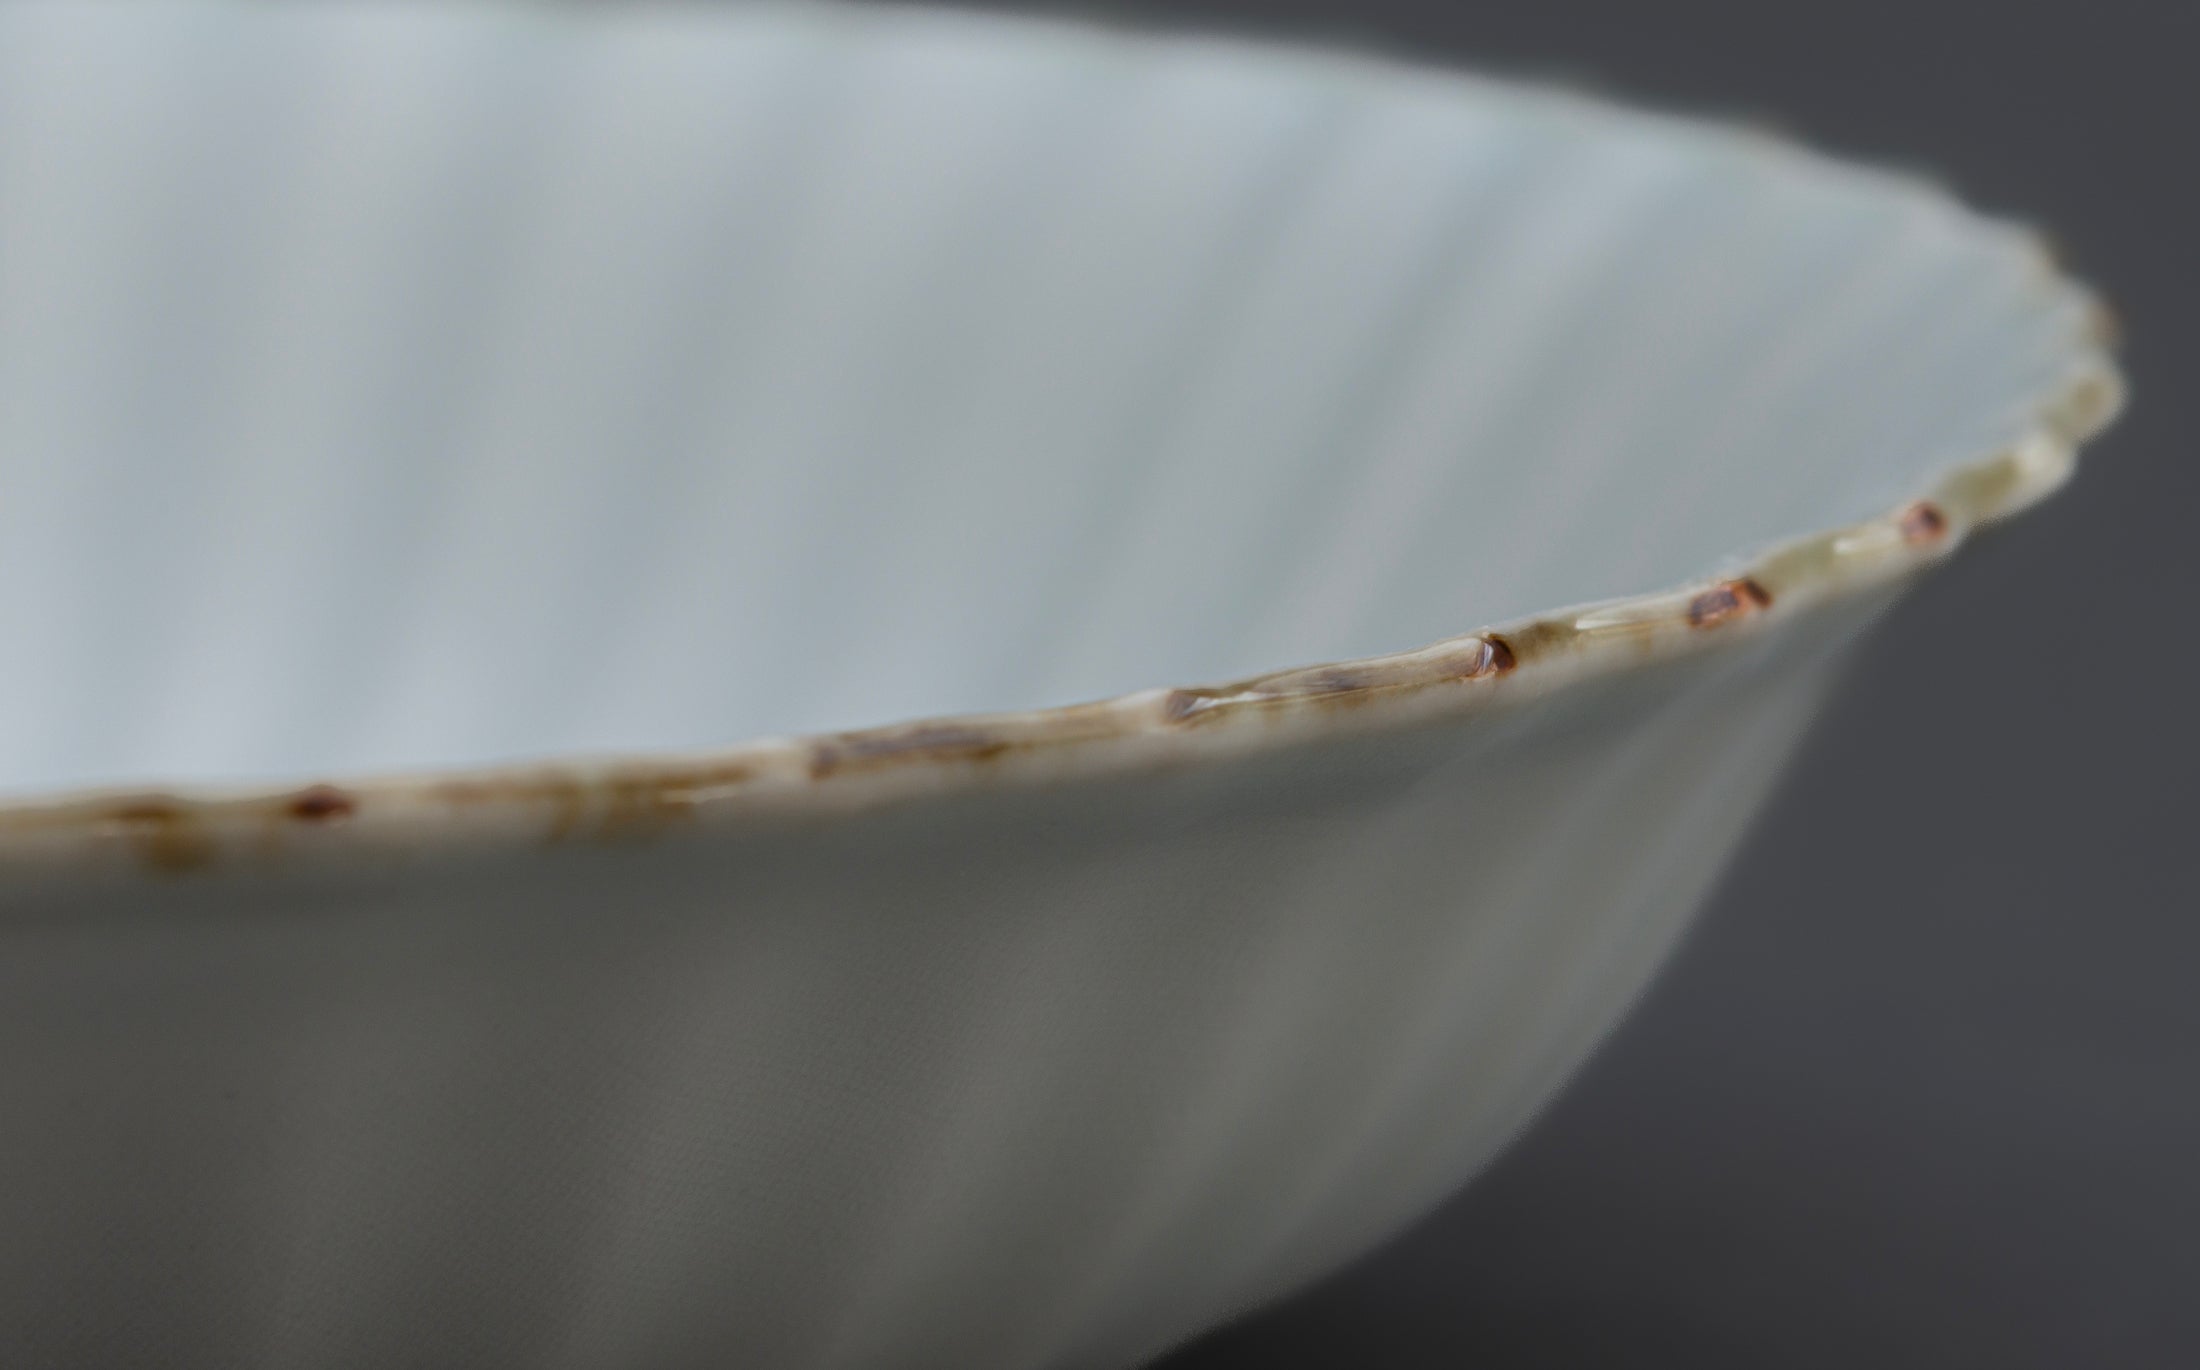 Katsutoshi Mizuno - Porcelain White - Shallow Bowl 034